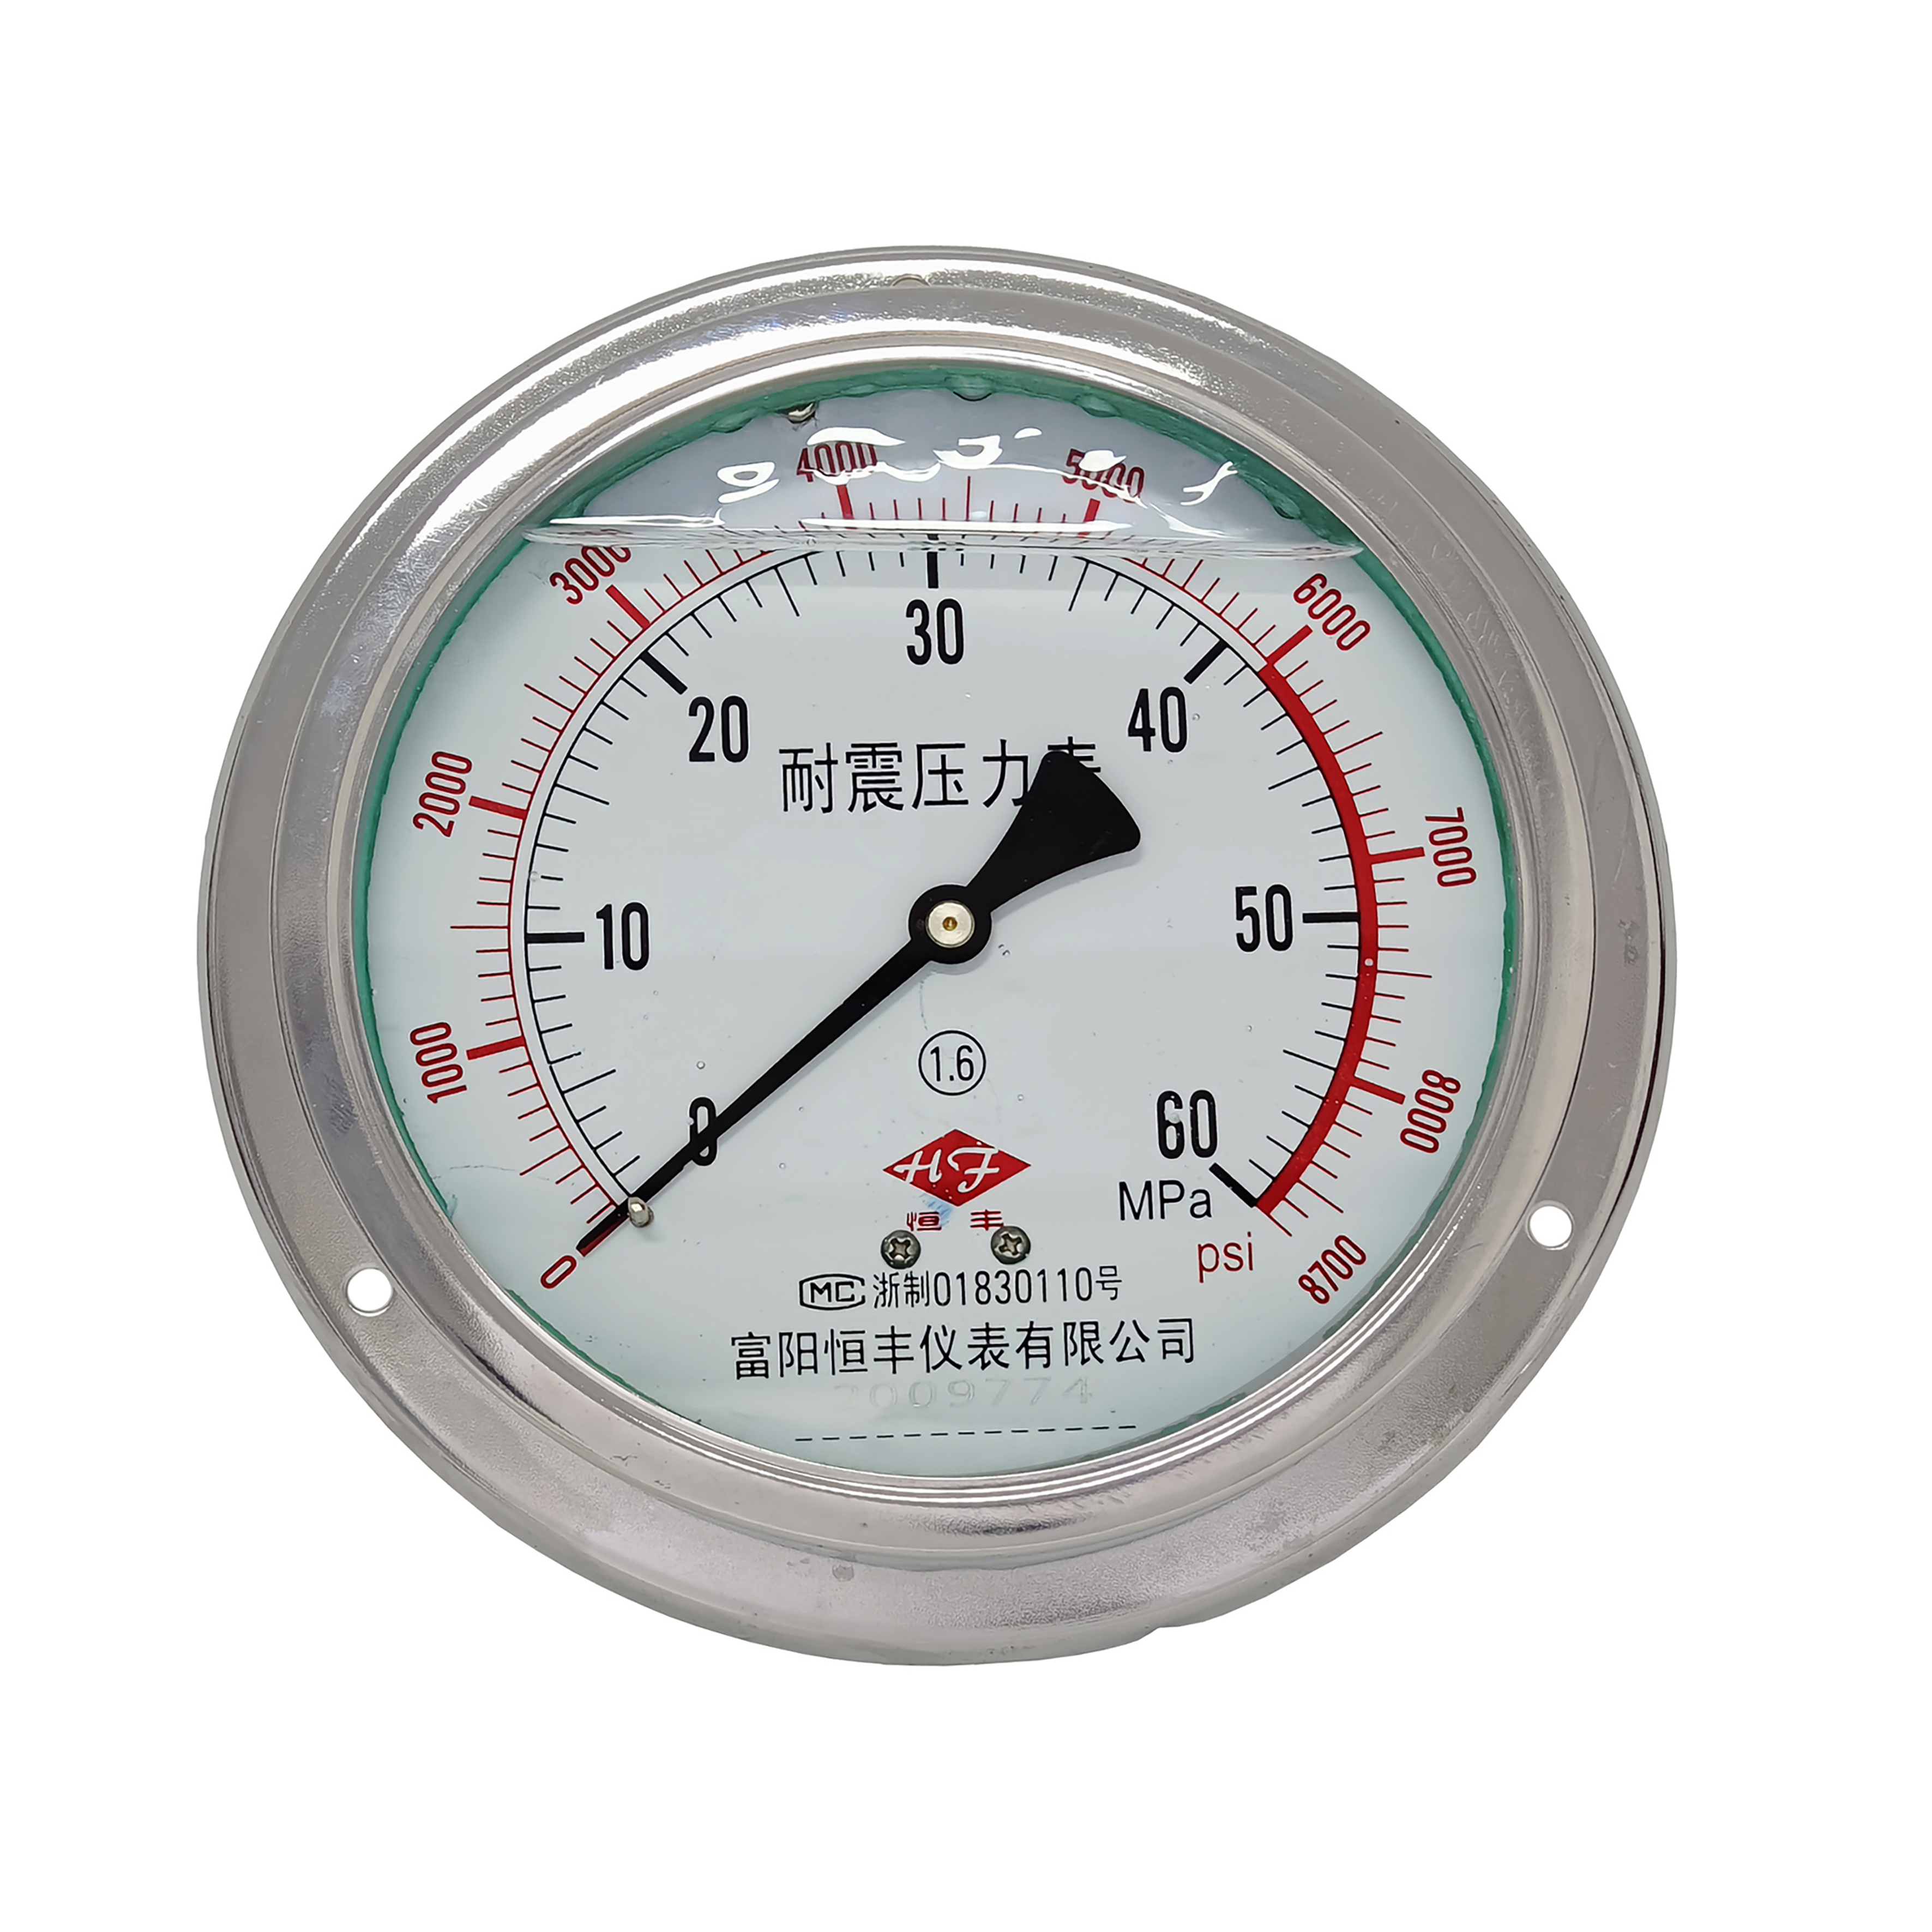 YN150ZT shock-proof pressure gauge